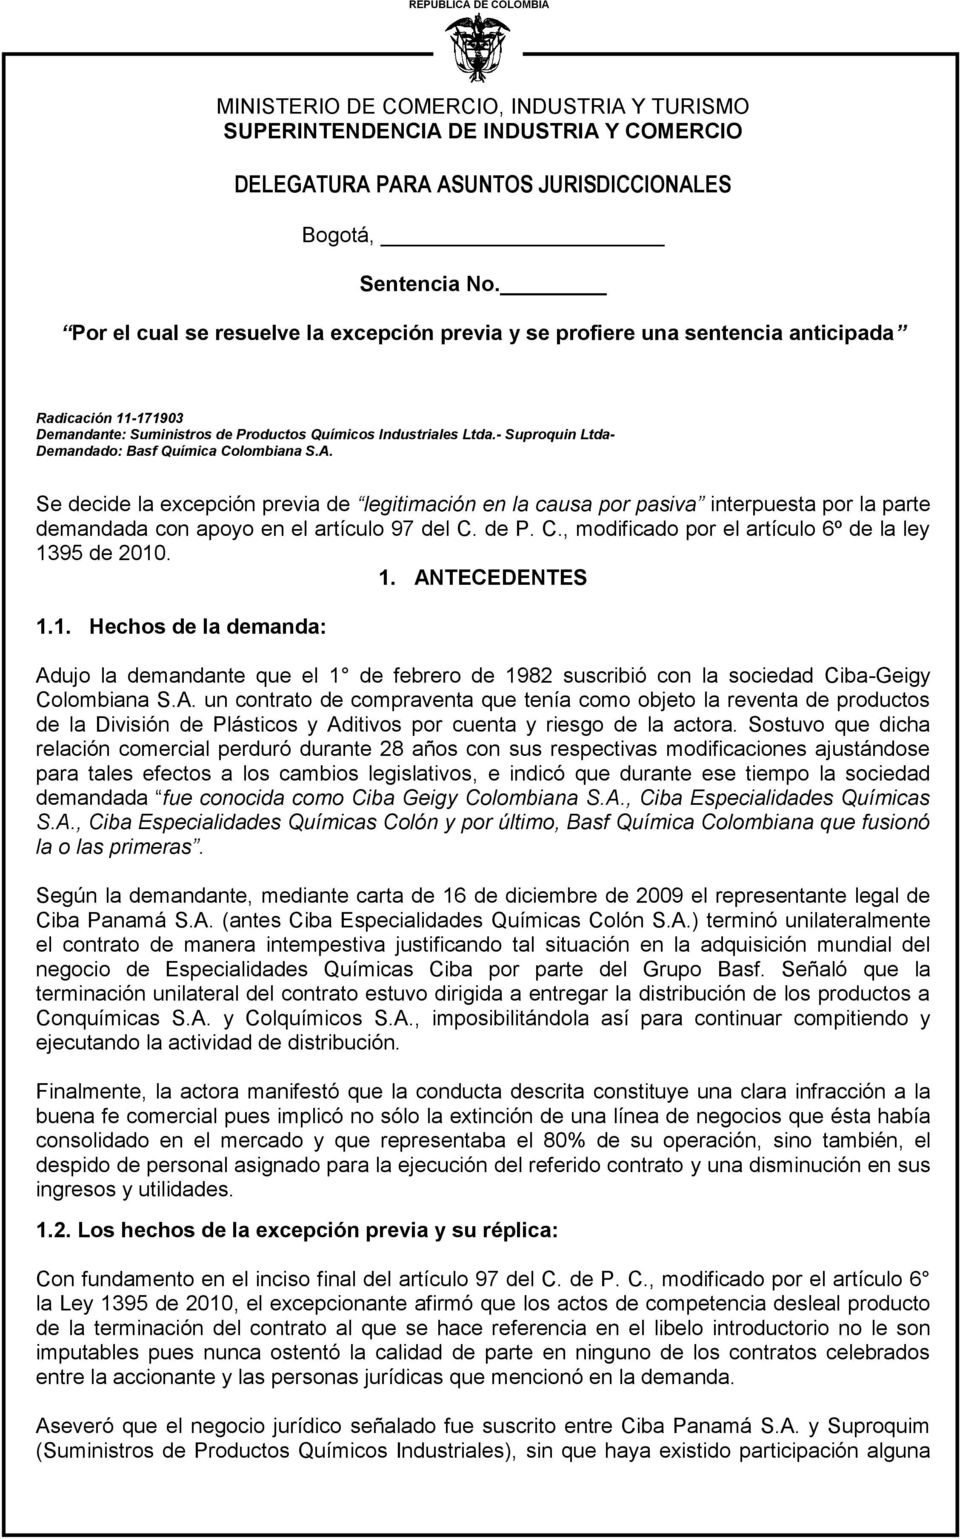 - Suproquin Ltda- Demandado: Basf Química Colombiana S.A. Se decide la excepción previa de legitimación en la causa por pasiva interpuesta por la parte demandada con apoyo en el artículo 97 del C.